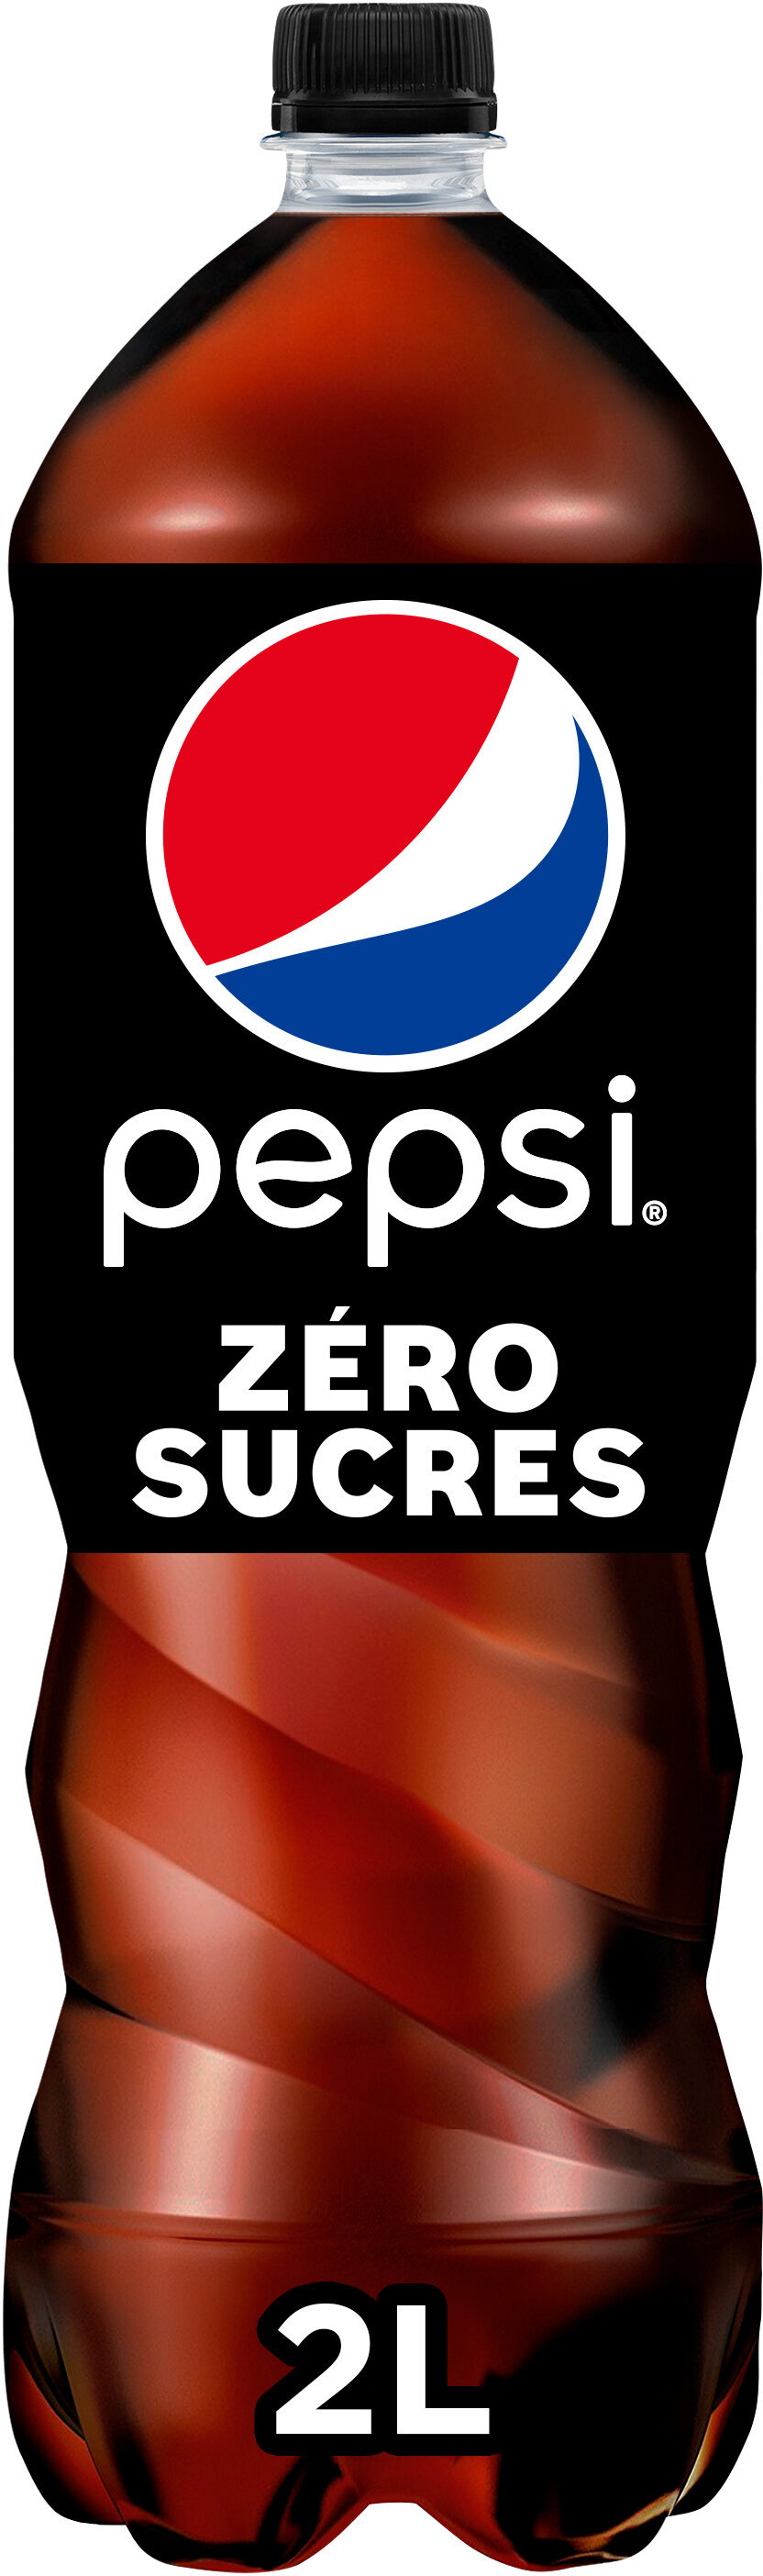 Pepsi Zéro sucres 2 L maxi format - Produit